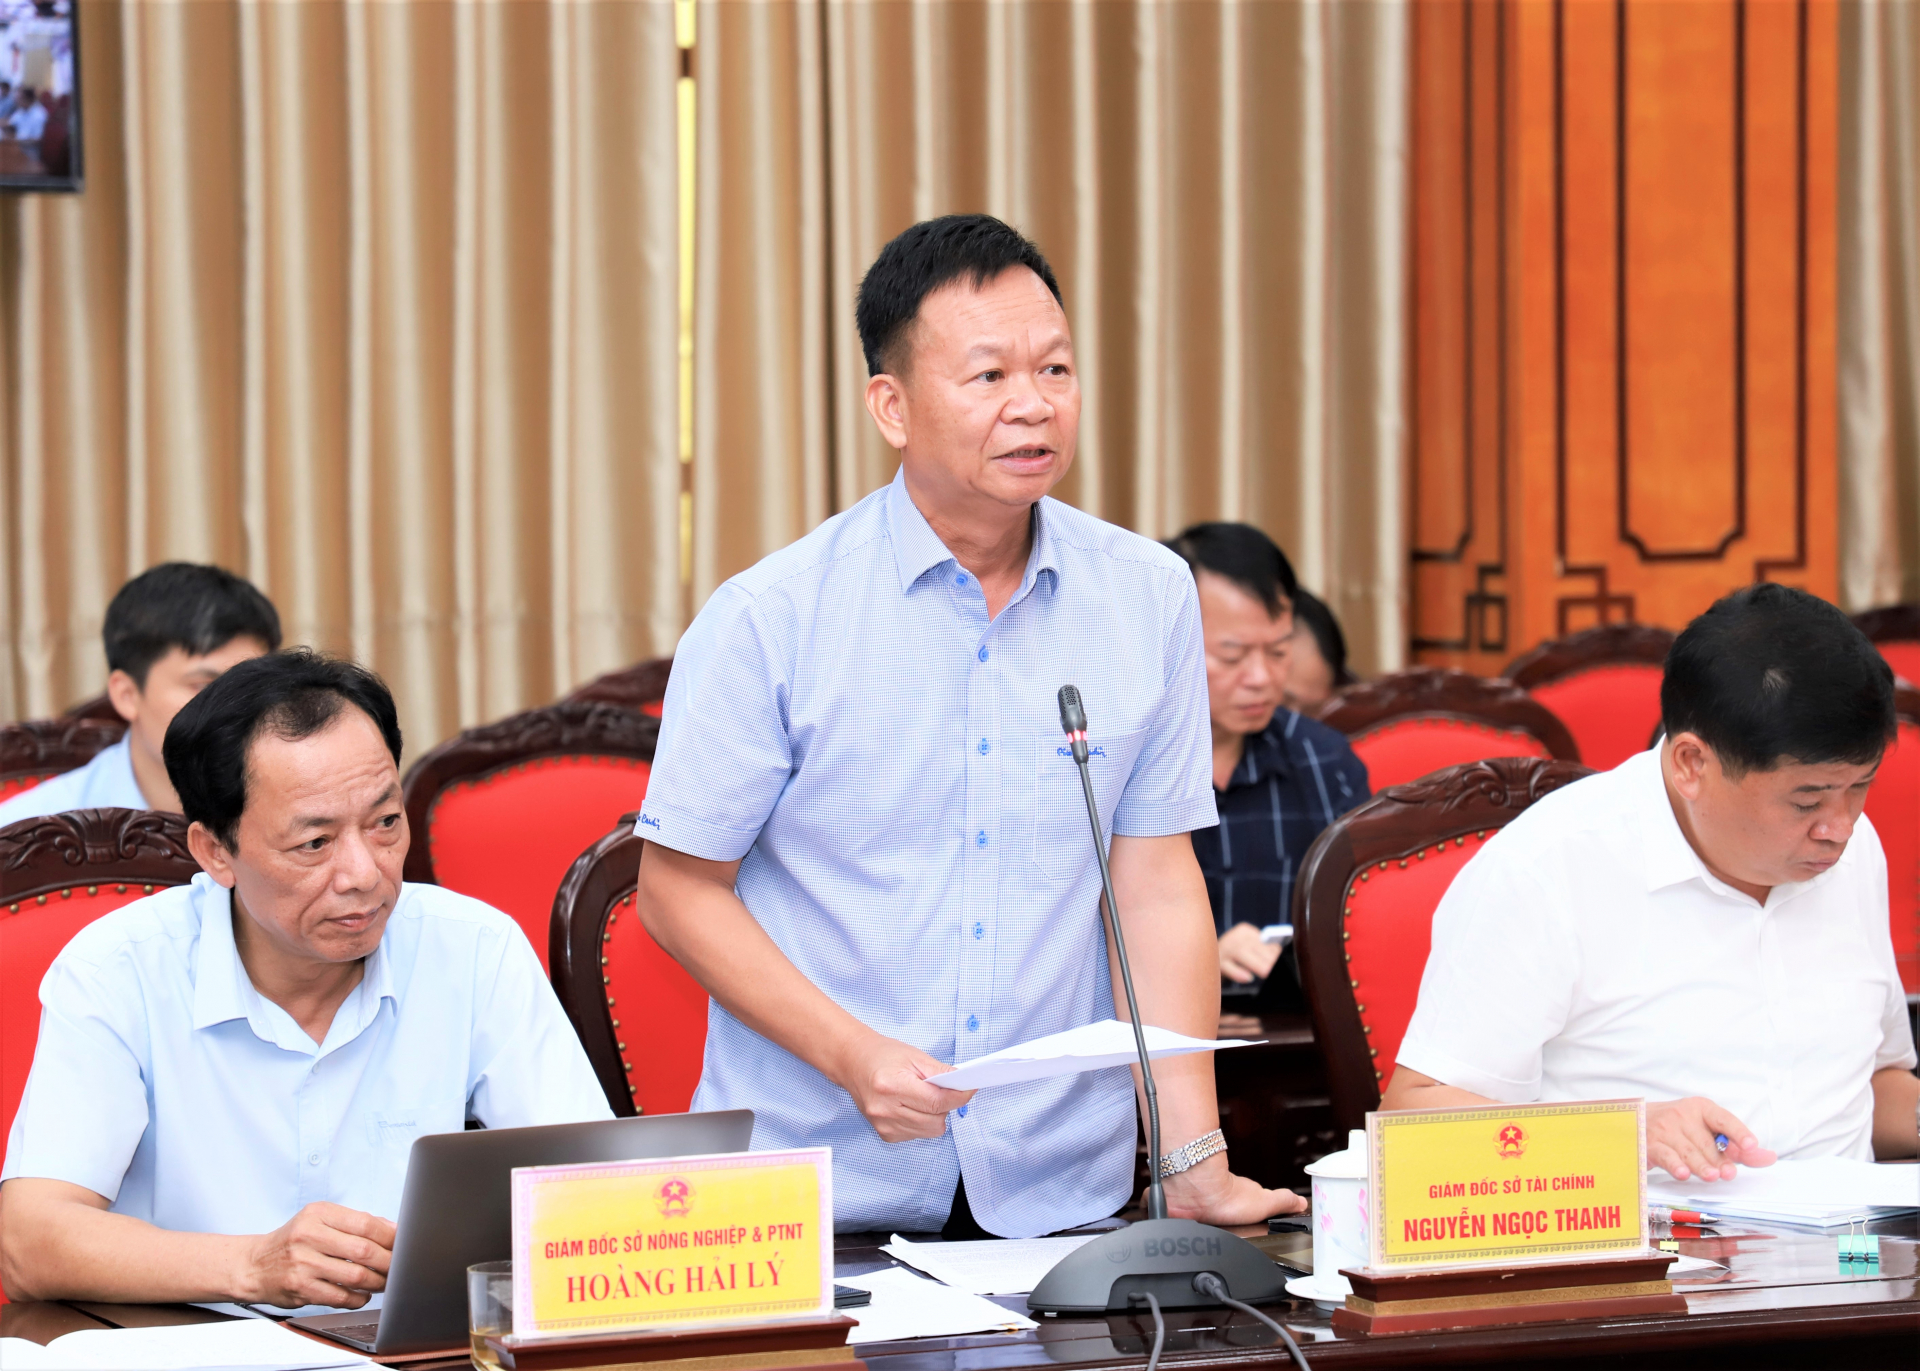 Giám đốc Sở Tài chính Nguyễn Ngọc Thanh phát biểu thảo luận